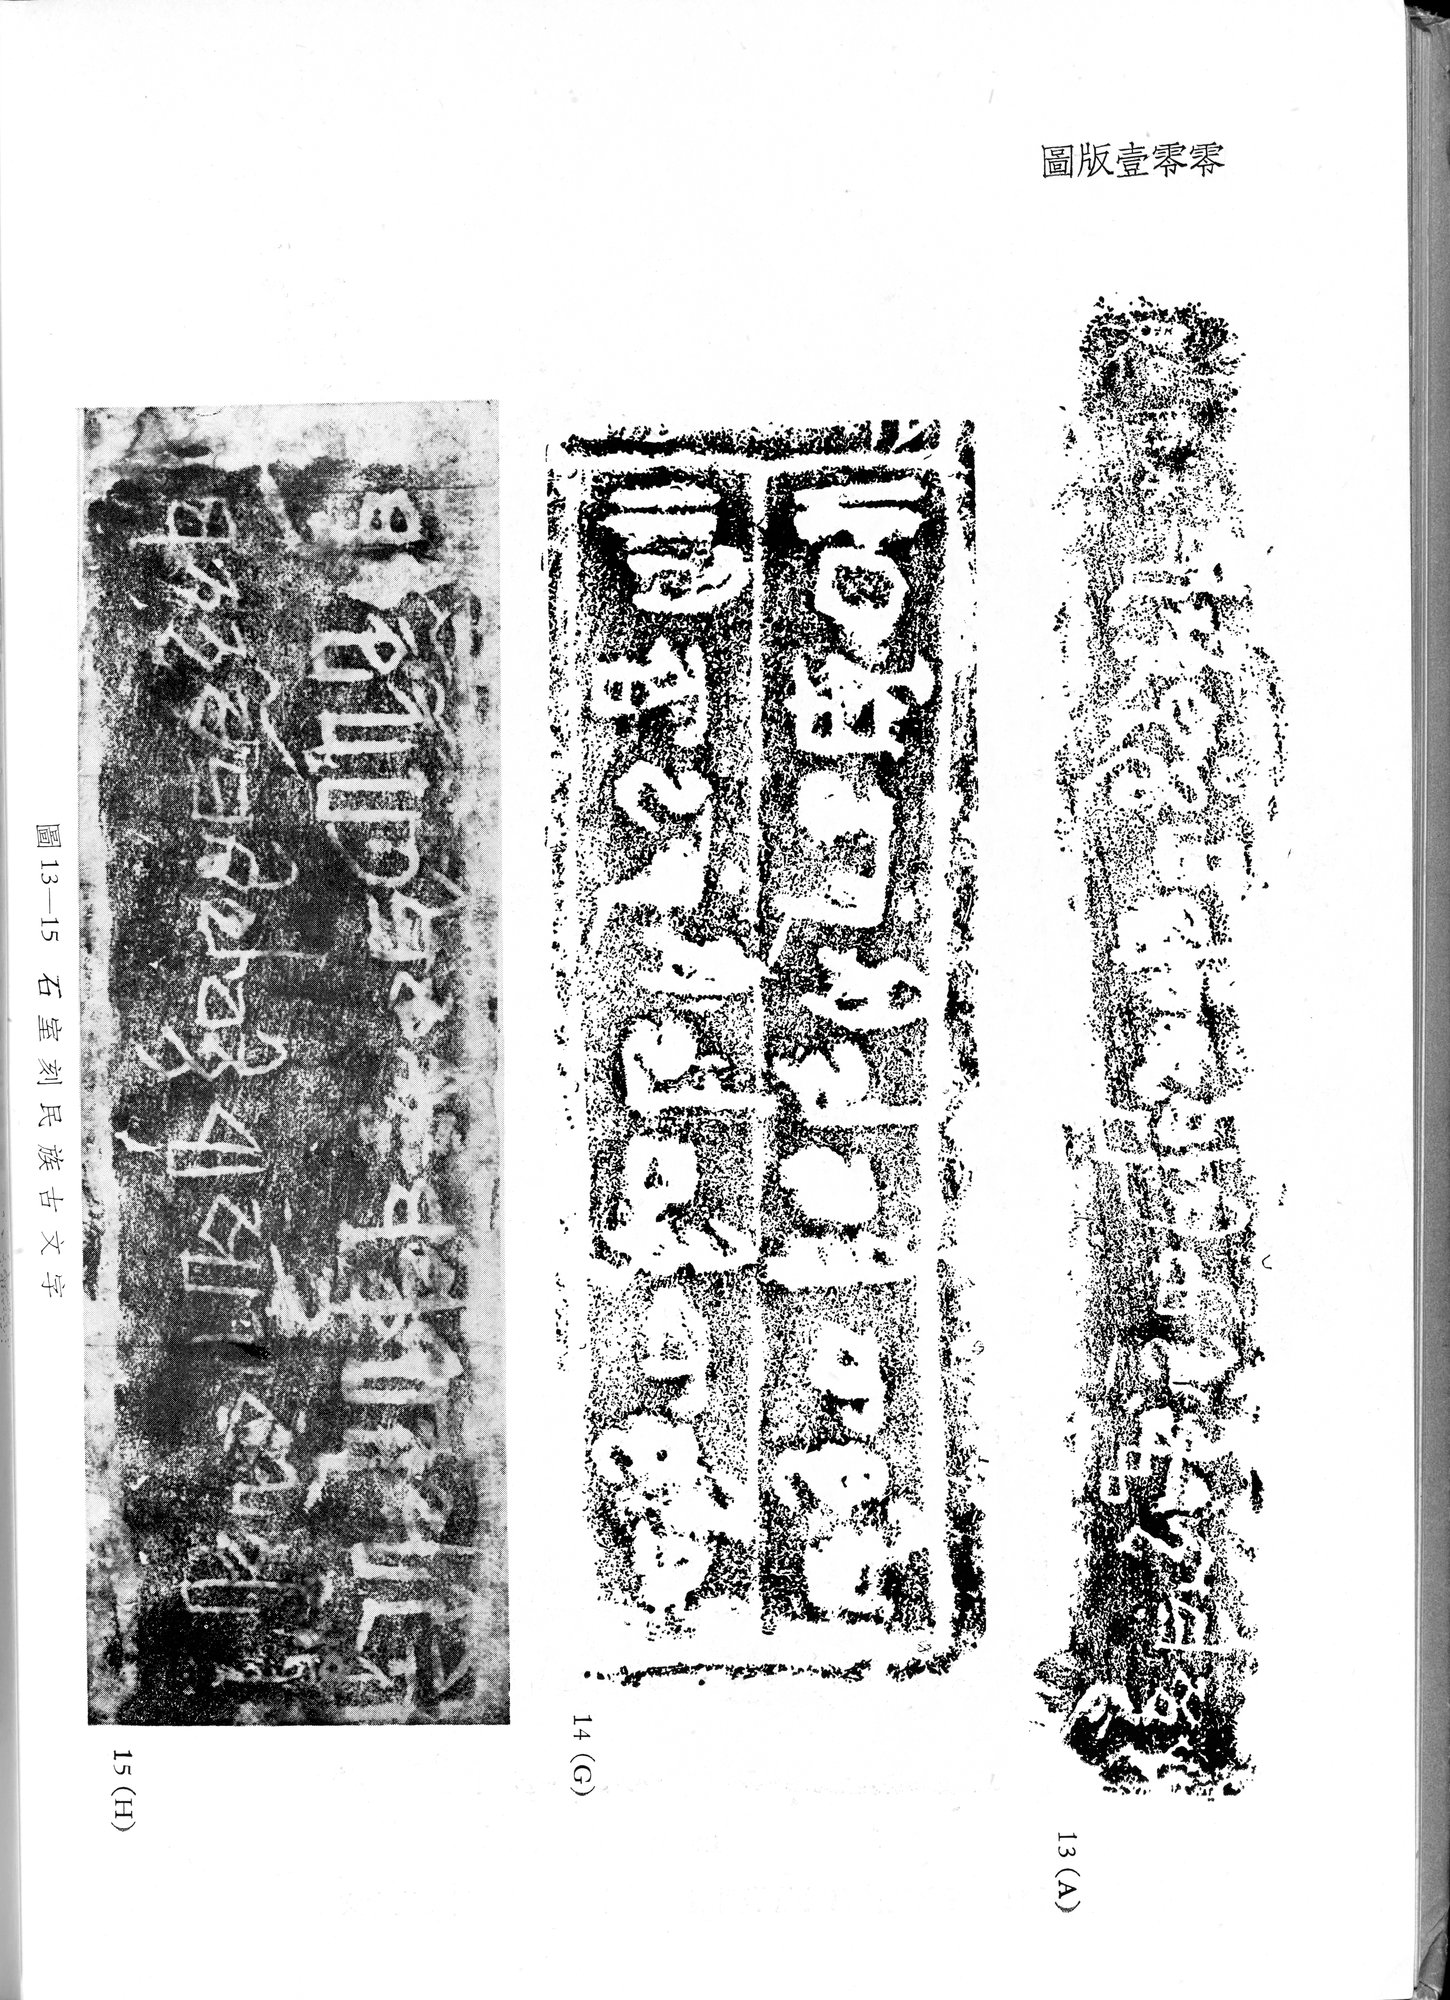 塔里木盆地考古記 : vol.1 / Page 334 (Grayscale High Resolution Image)